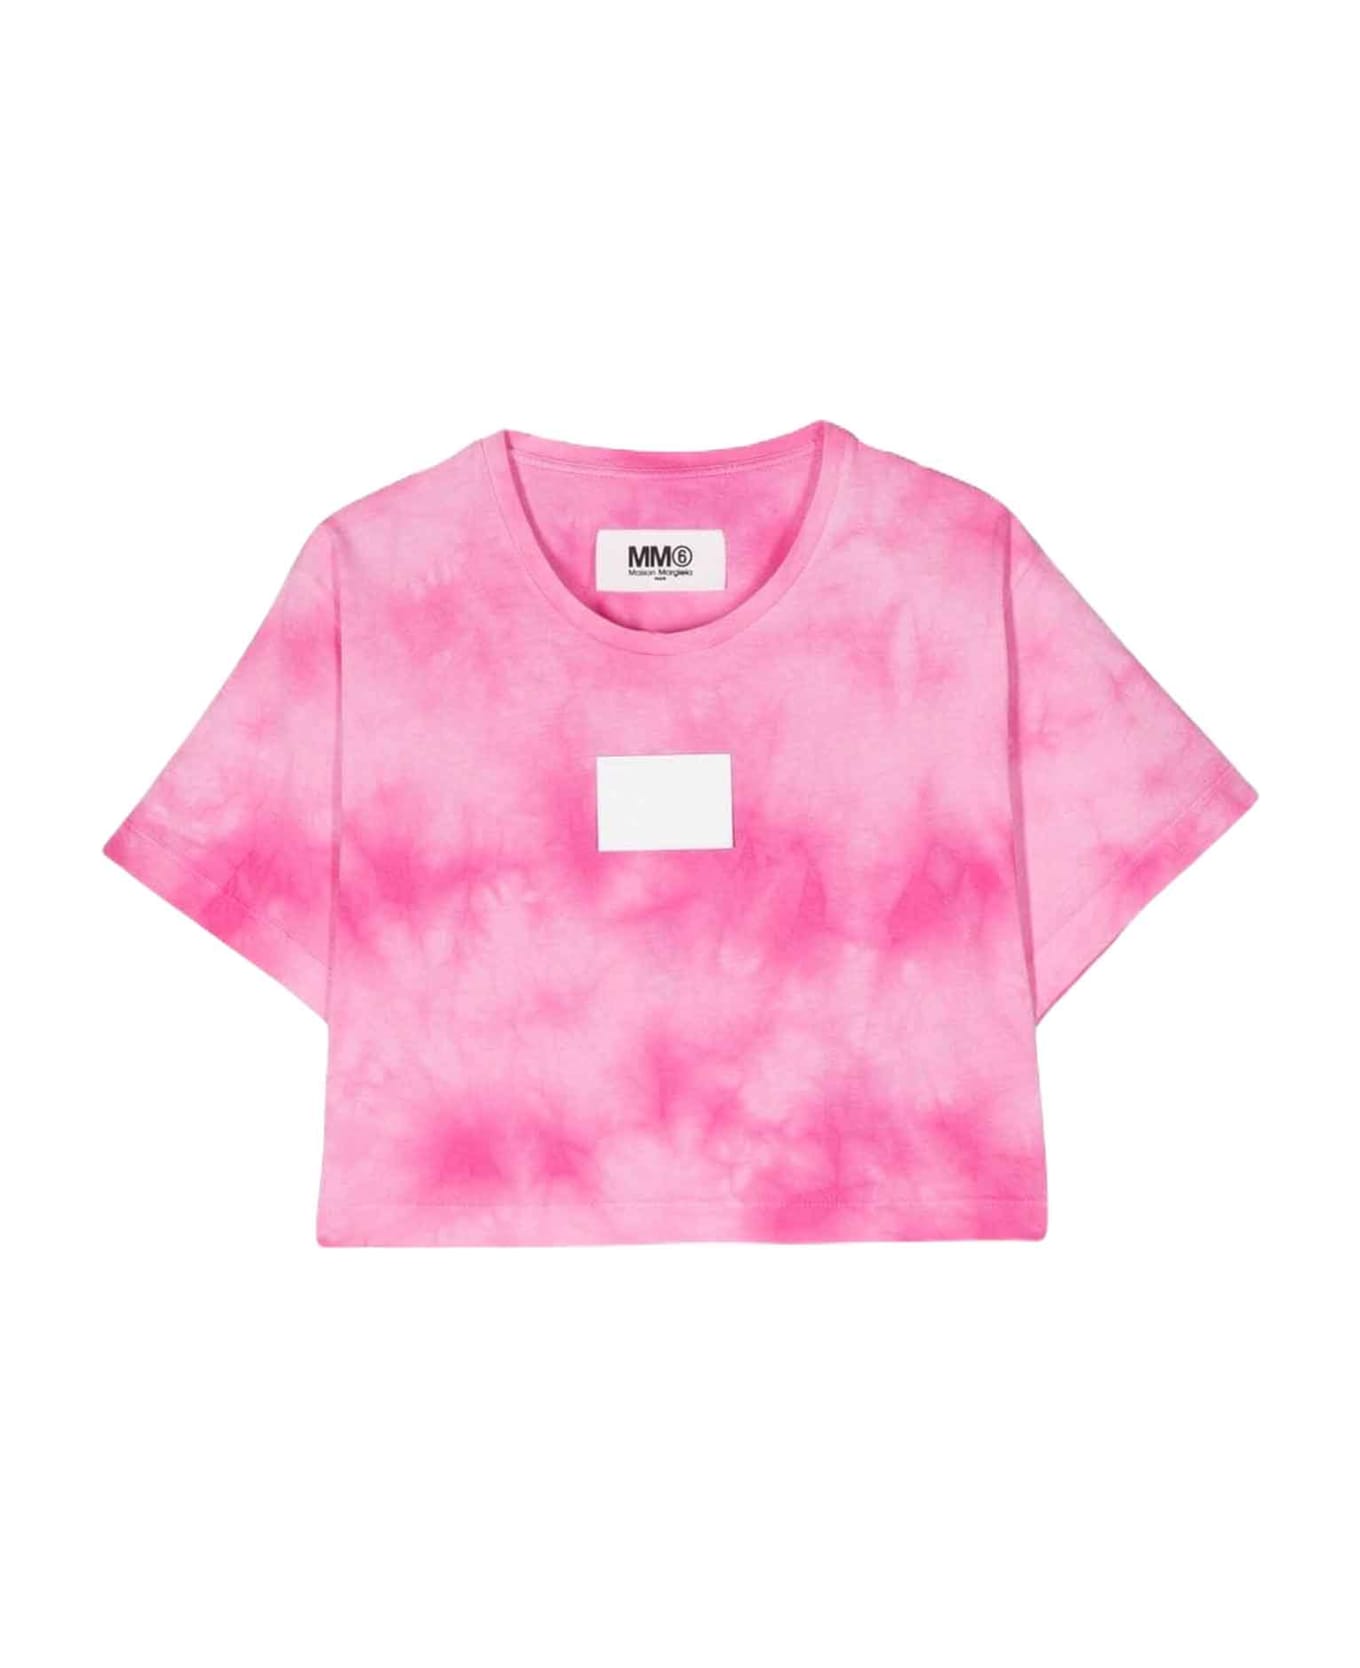 MM6 Maison Margiela Pink T-shirt Unisex - Rosa